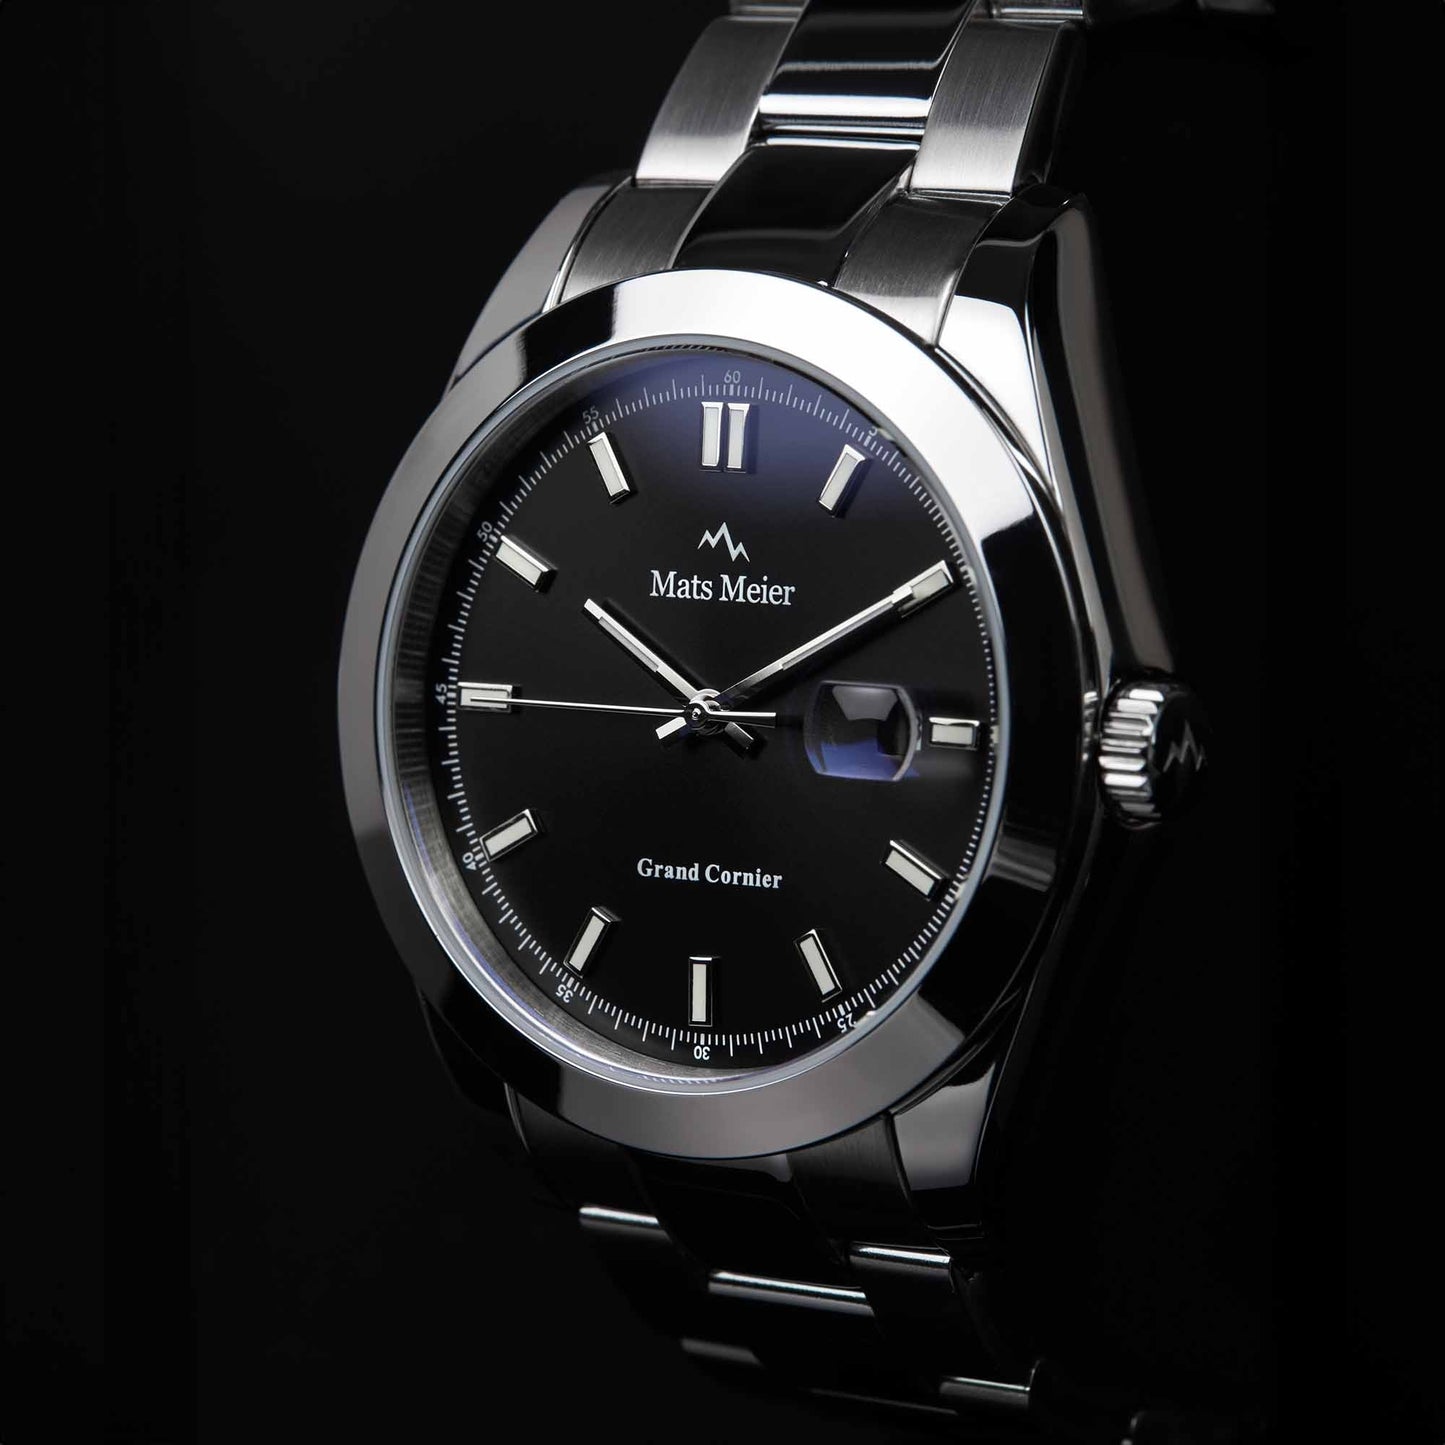 Grand Cornier orologio da uomo color argento e nero